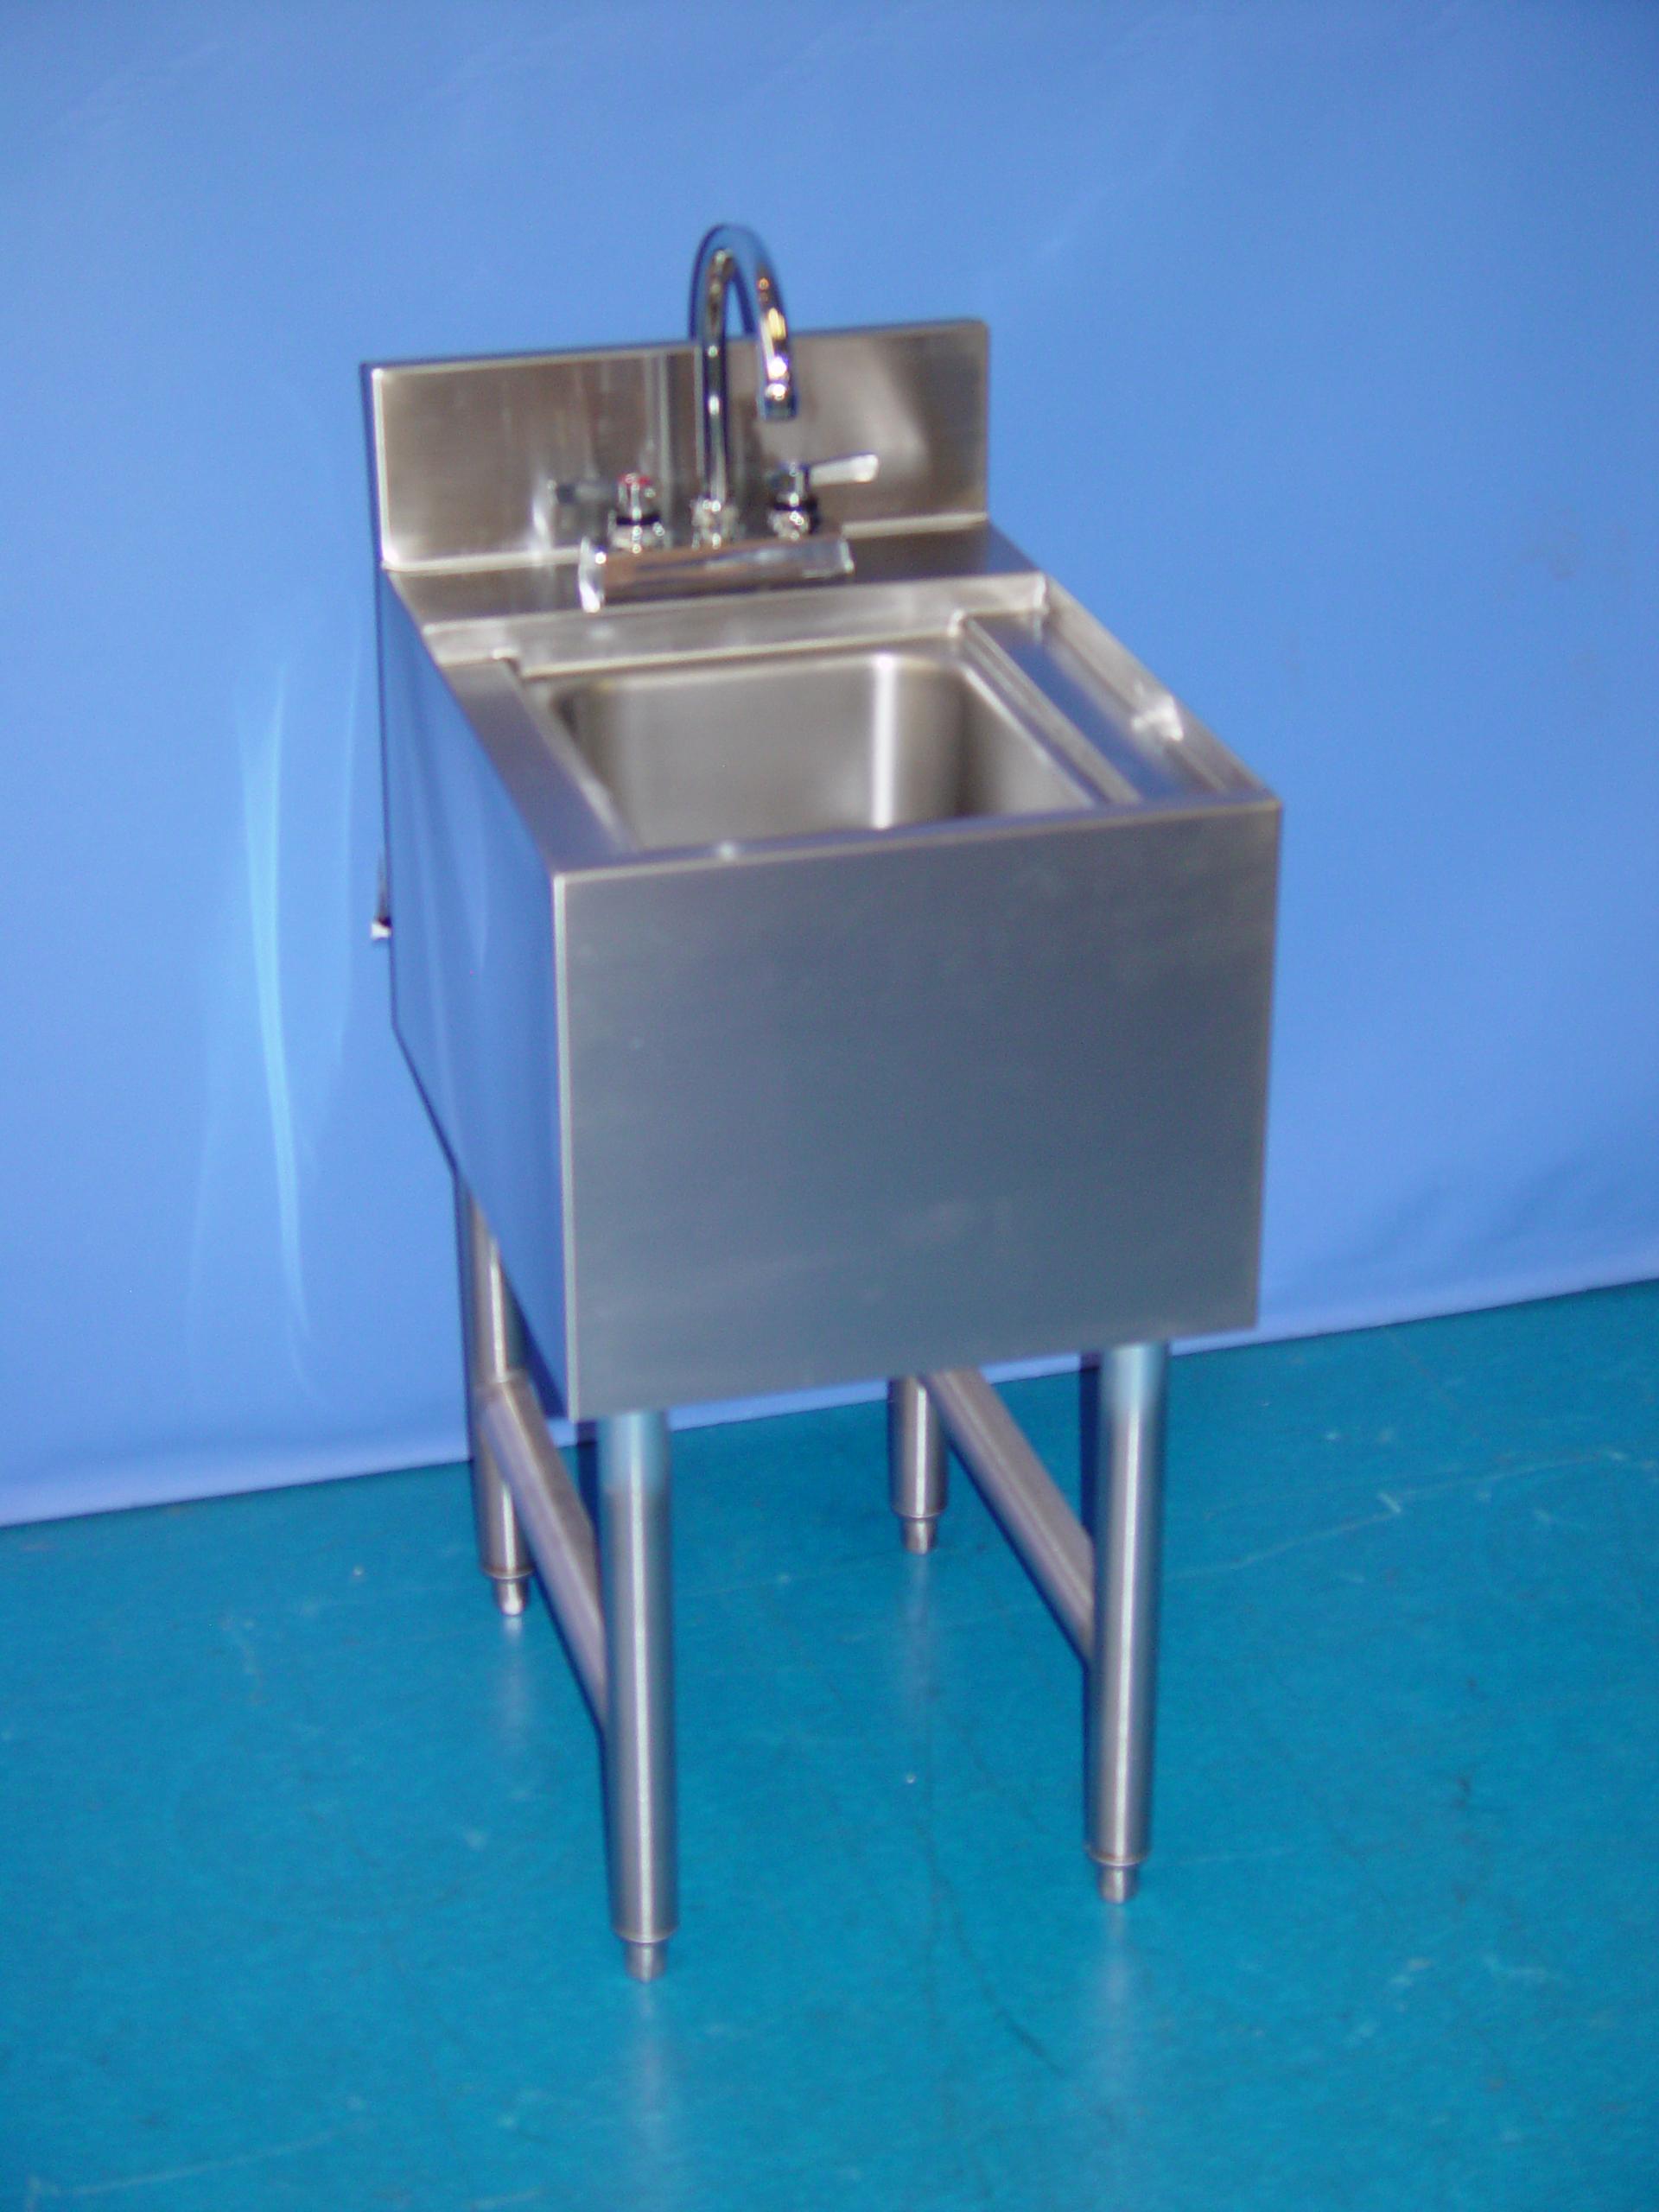 Underbar Hand Washing Sink Unit Asi 051 0 00 Asi